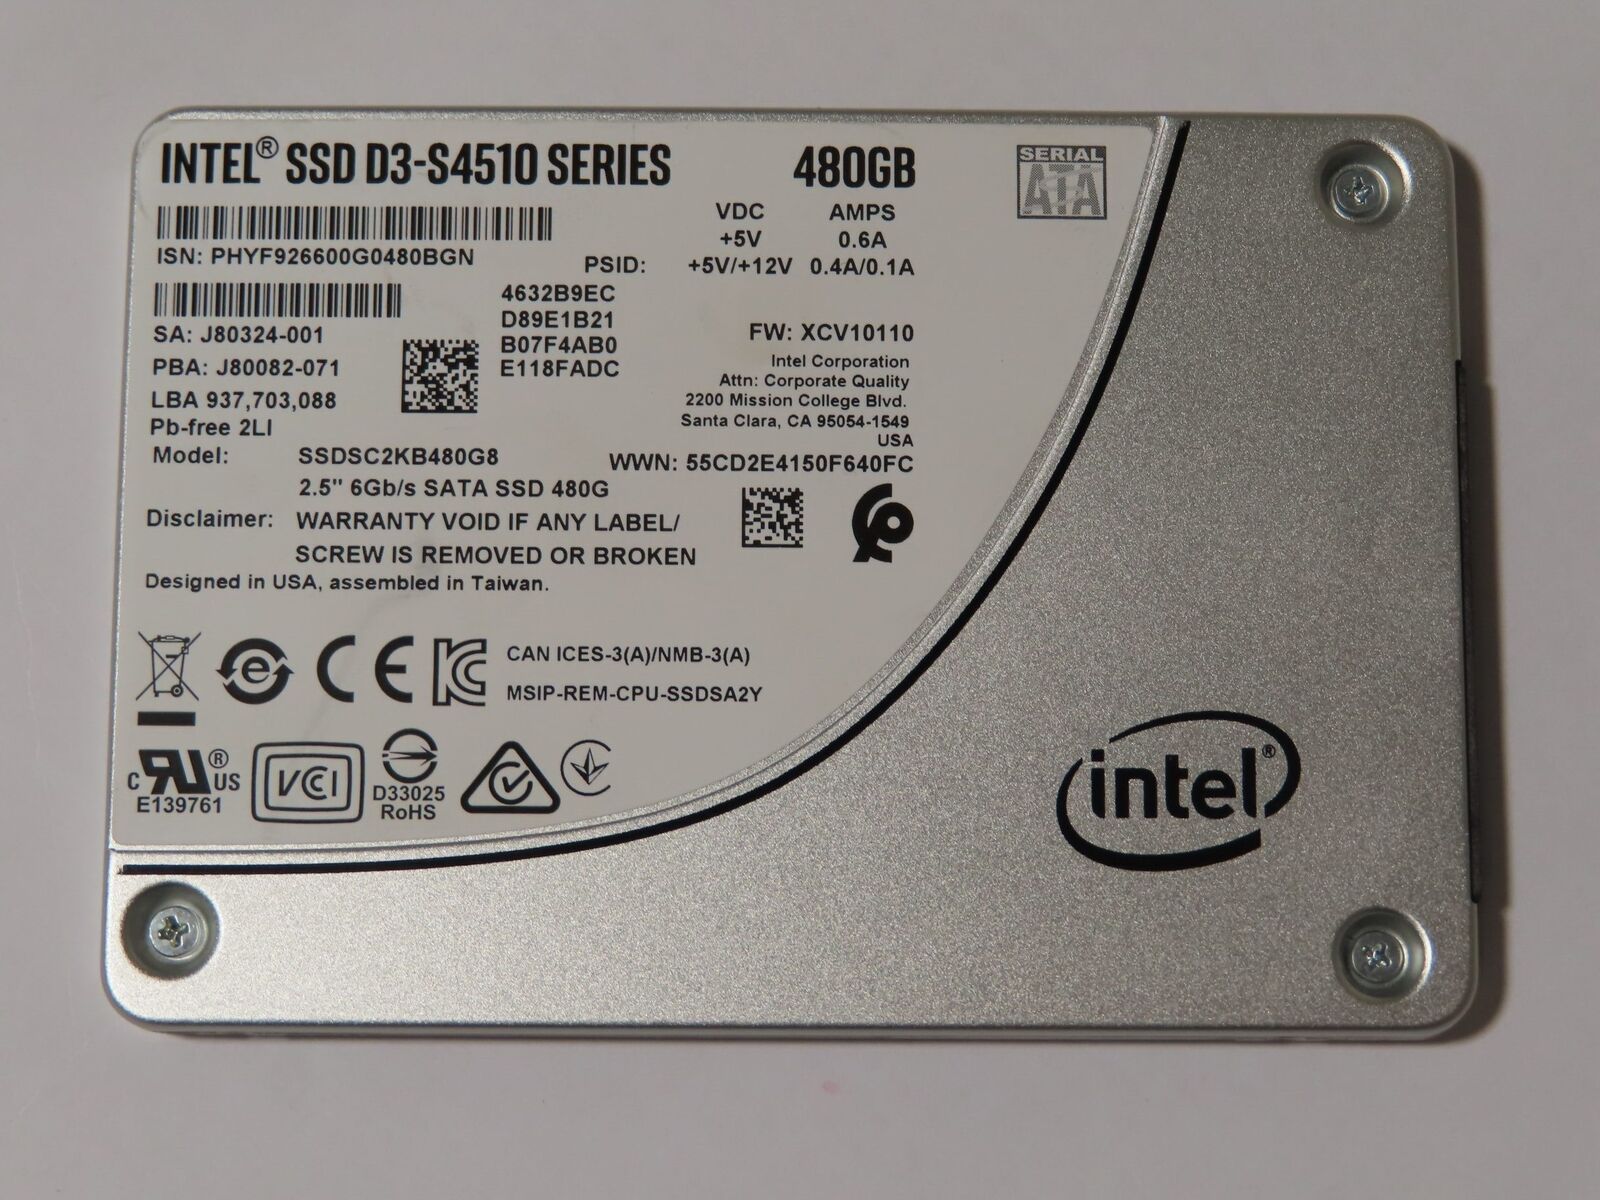 Intel 480GB SATA SSD D3-S4510 Series 2.5